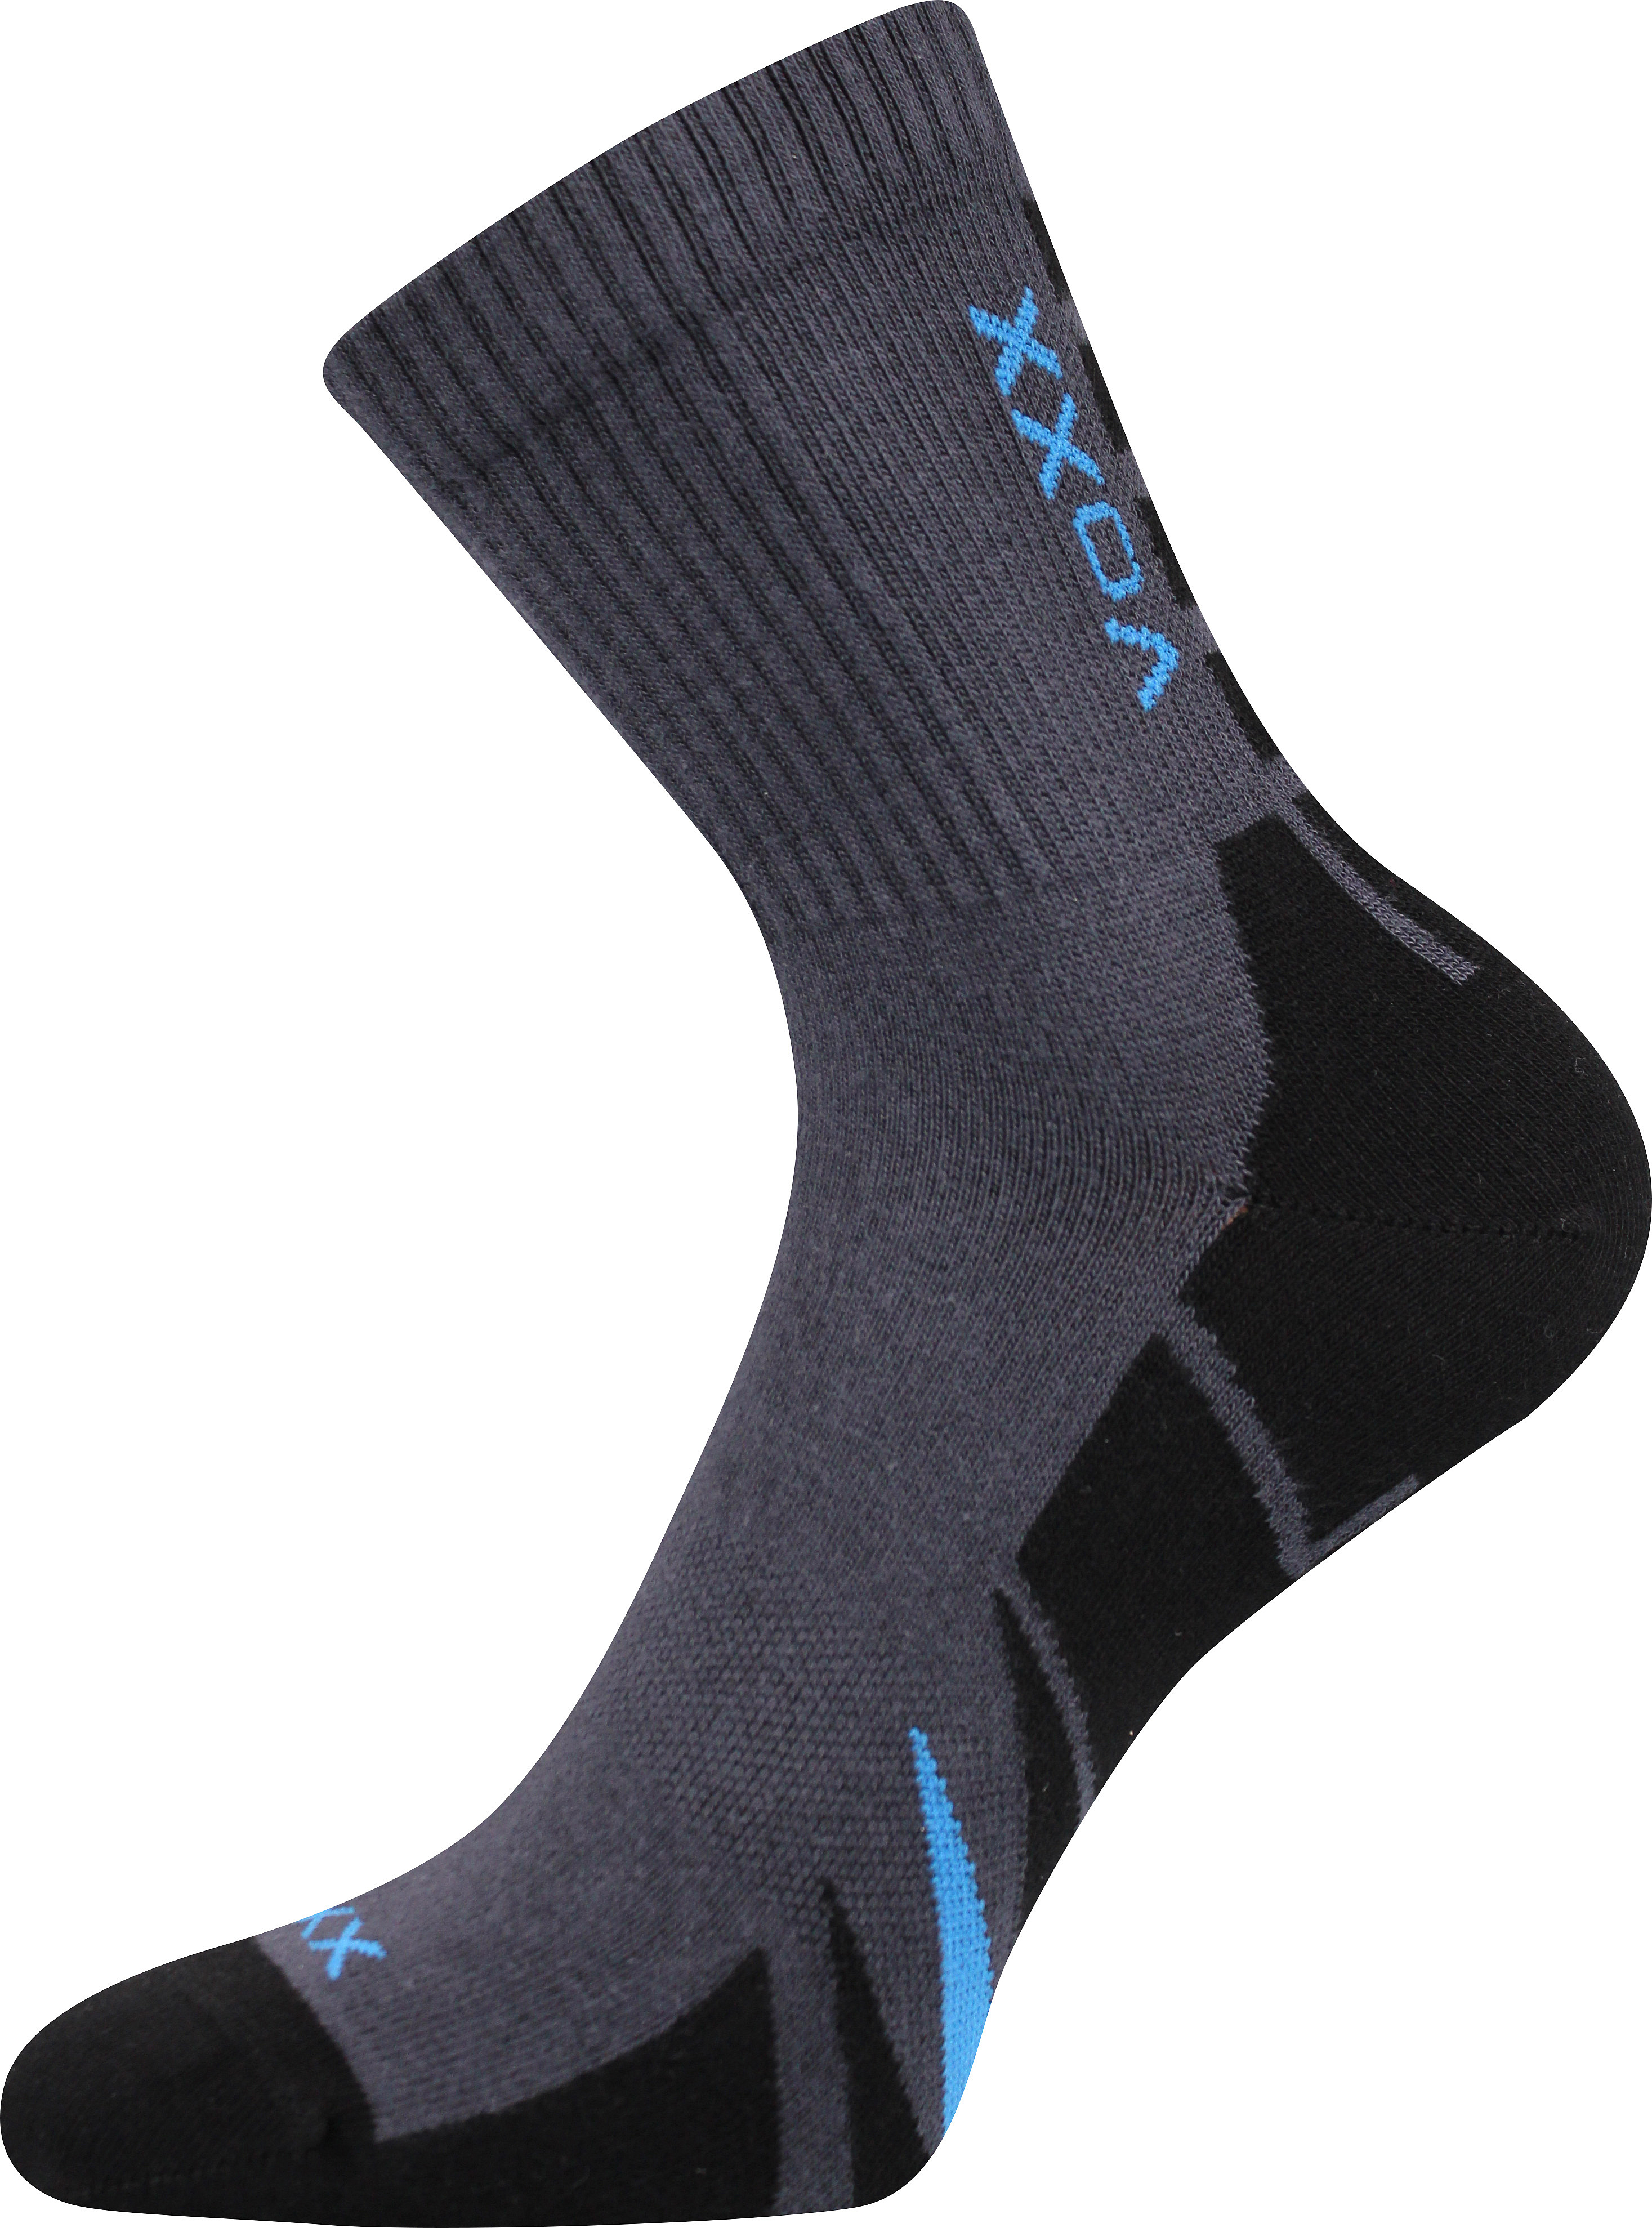 Ponožky sportovní Voxx Hermes - tmavě šedé-černé, 47-50